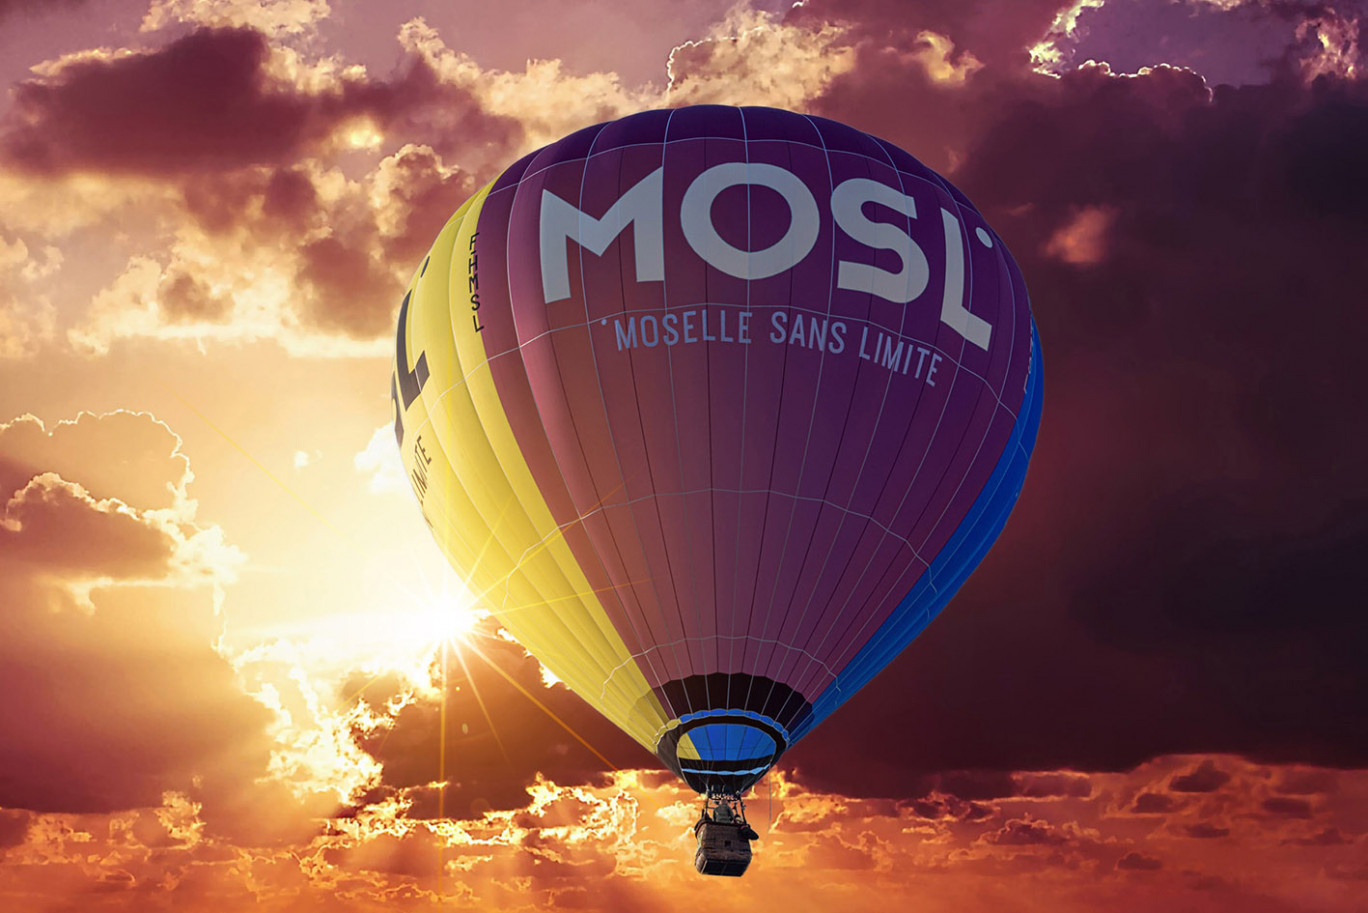 © carnetsdemoselle. La montgolfière MOSL mettra en avant le département jusqu’au 1er août prochain à l’occasion de la 17e édition du Grand Est Mondial Air Ballons à Chambley.